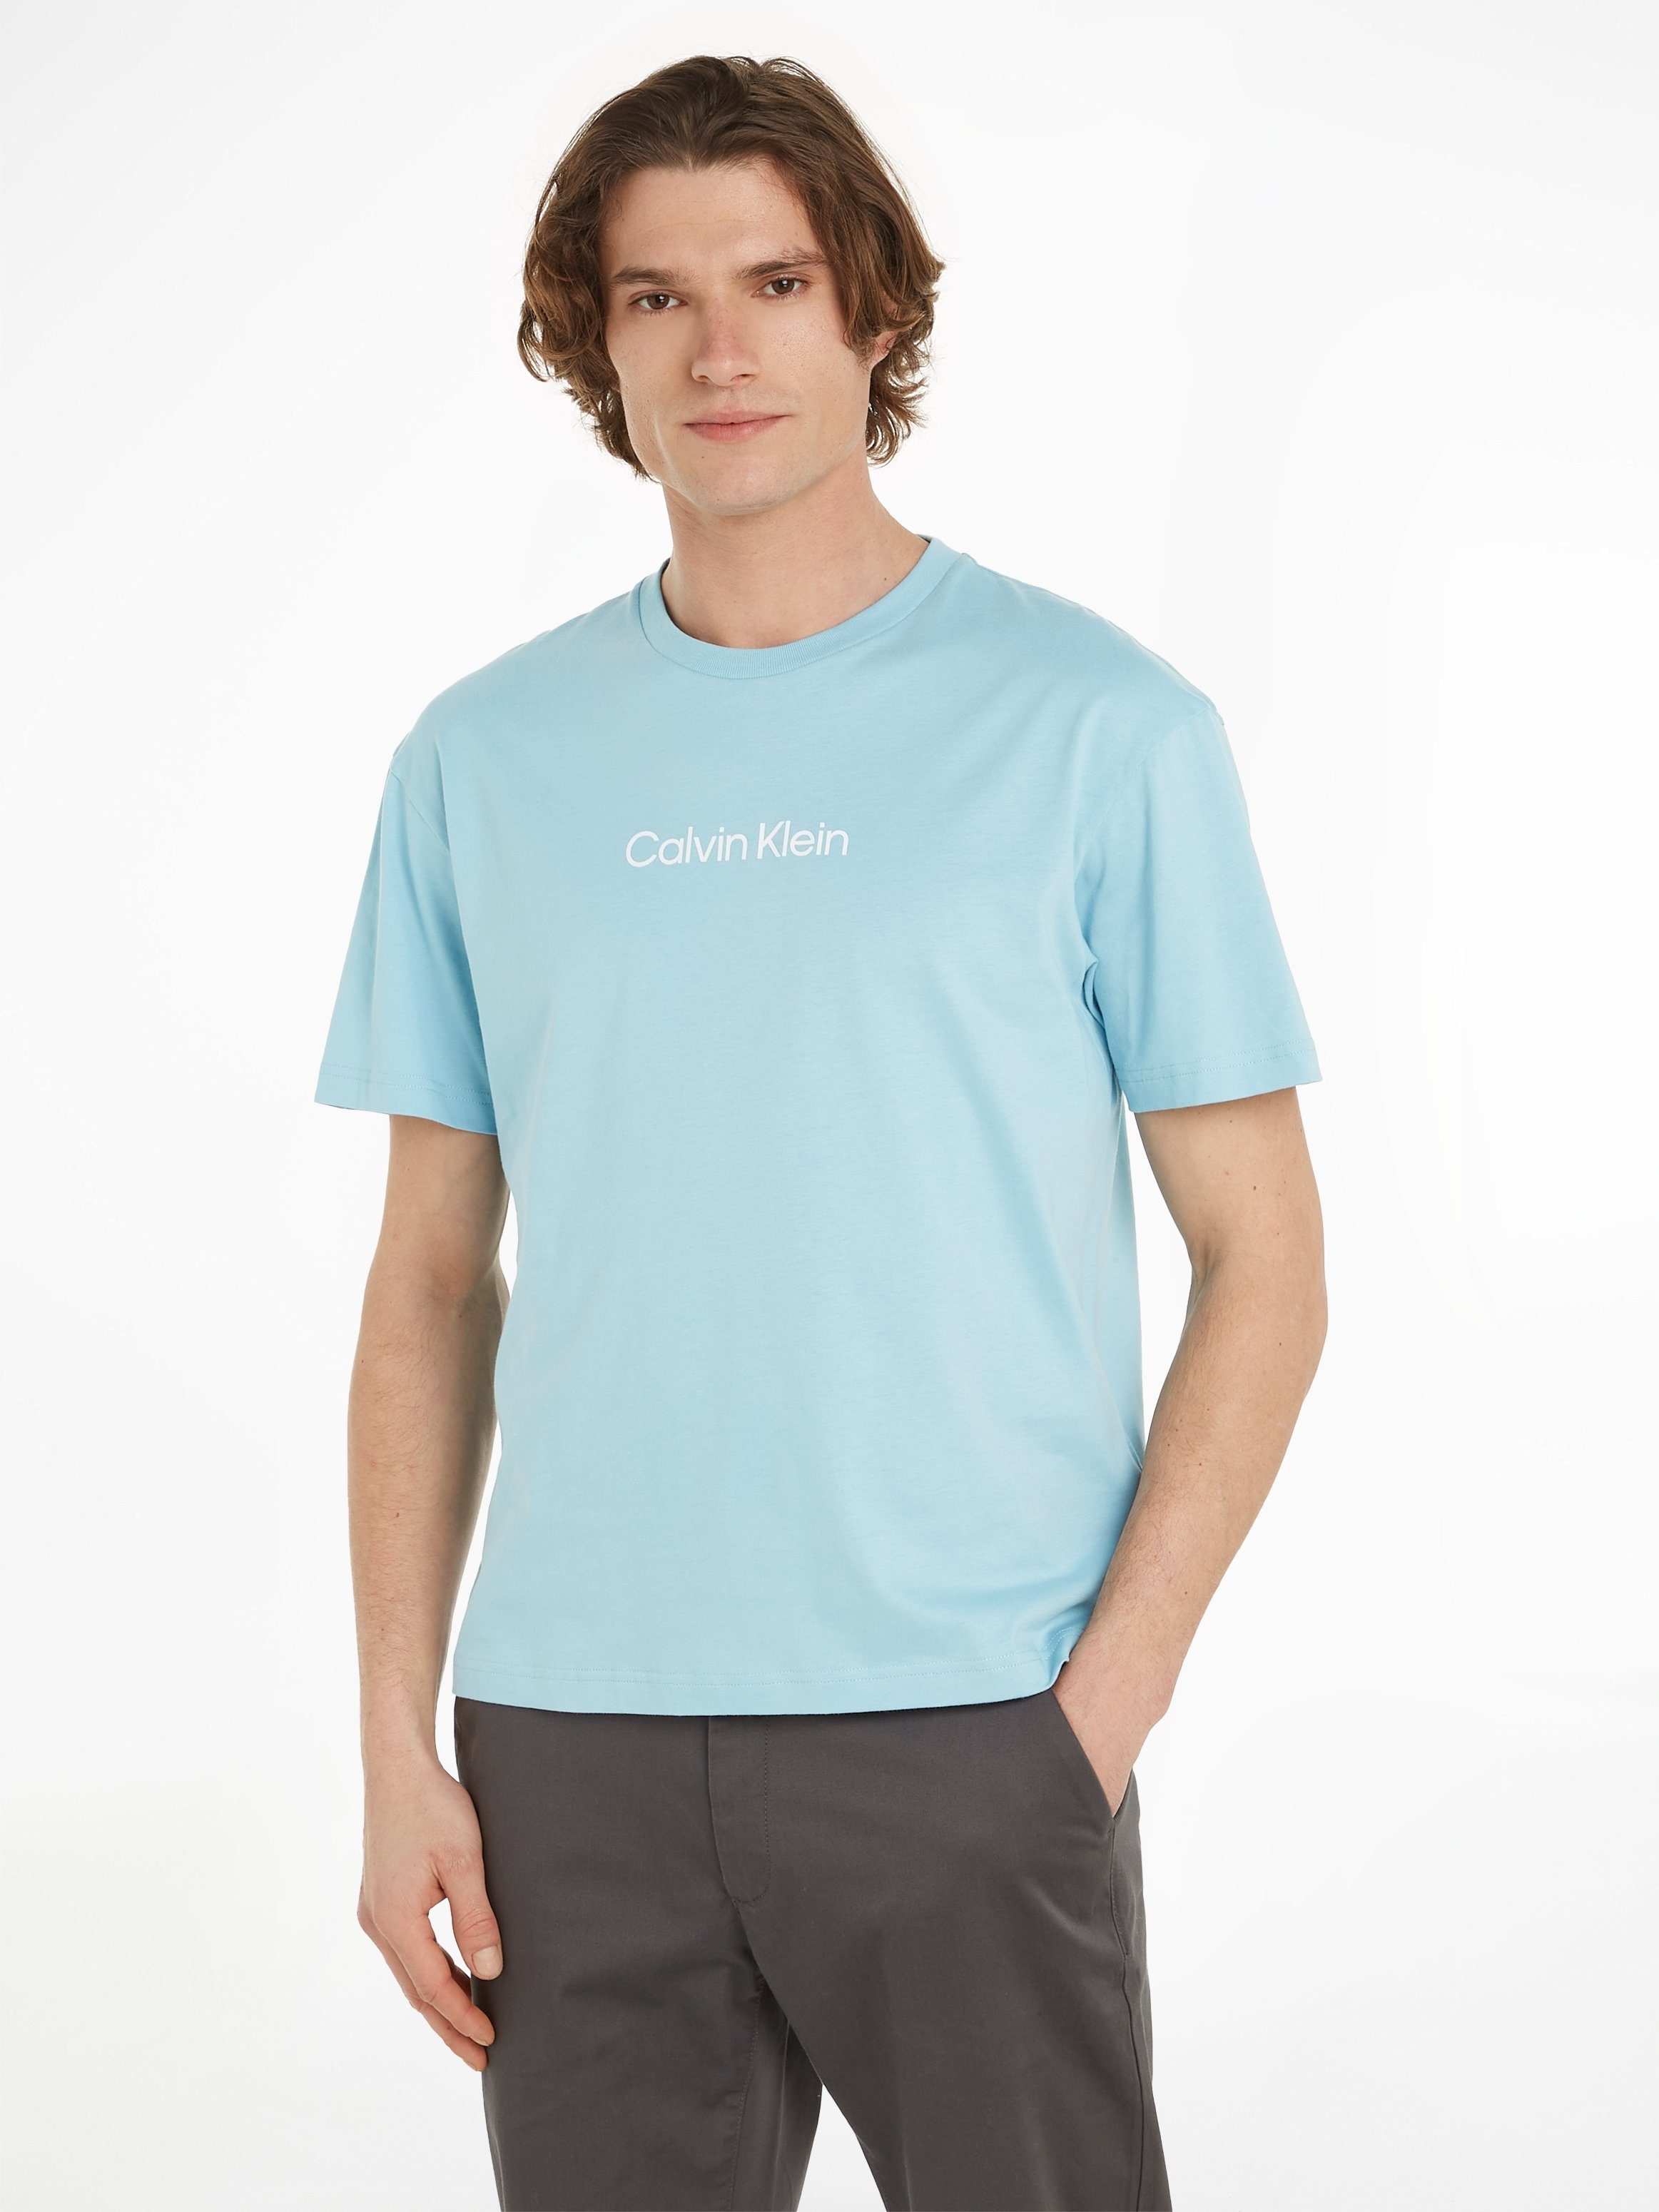 günstig kaufen Calvin Klein T-Shirt HERO LOGO mit Tropic Blue COMFORT T-SHIRT Markenlabel aufgedrucktem